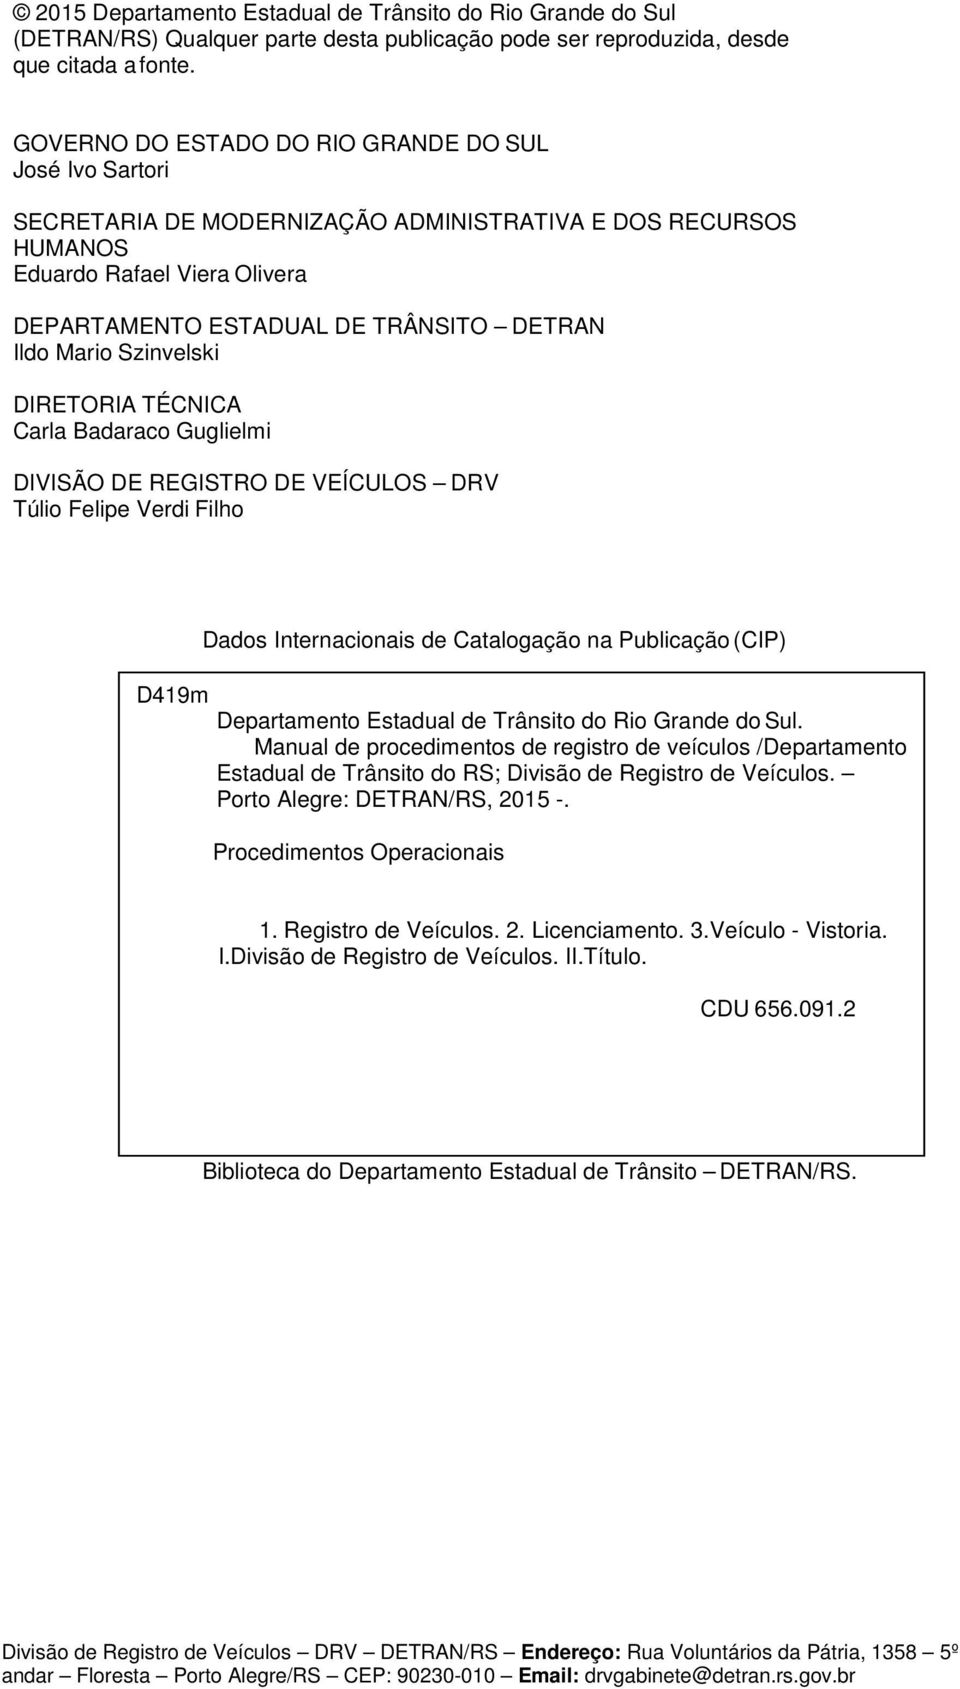 REGISTRO DE VEÍCULOS DRV Túlio Felipe Verdi Filho D419m Dados Internacionais de Catalogação na Publicação (CIP) Departamento Estadual de Trânsito do Rio Grande do Sul.